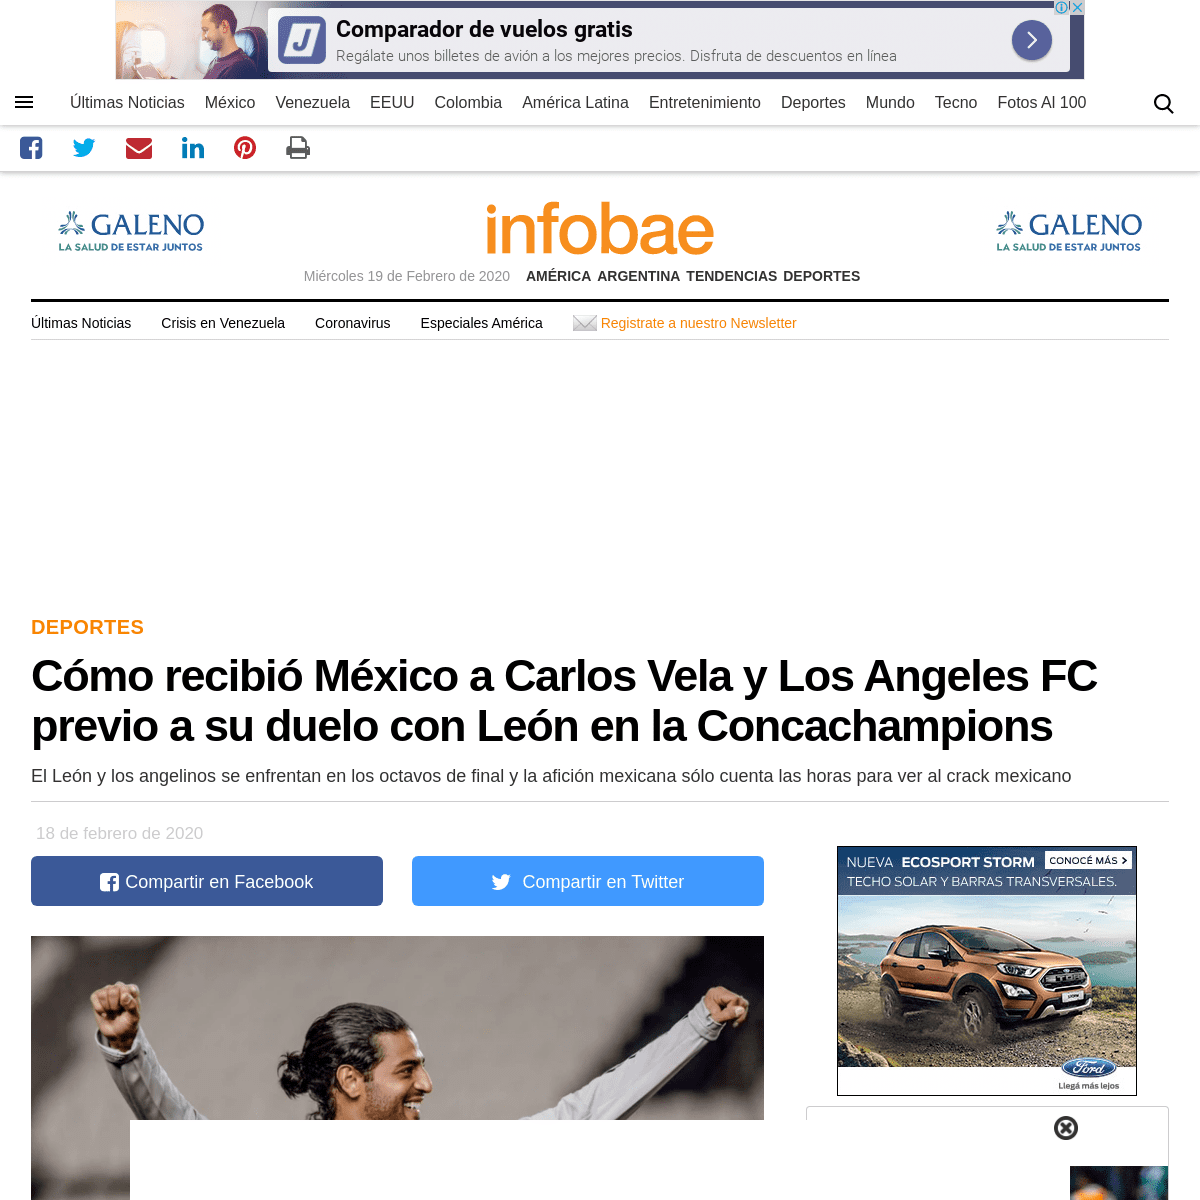 A complete backup of www.infobae.com/america/deportes/2020/02/18/como-recibio-mexico-a-carlos-vela-y-los-angeles-fc-previo-a-su-